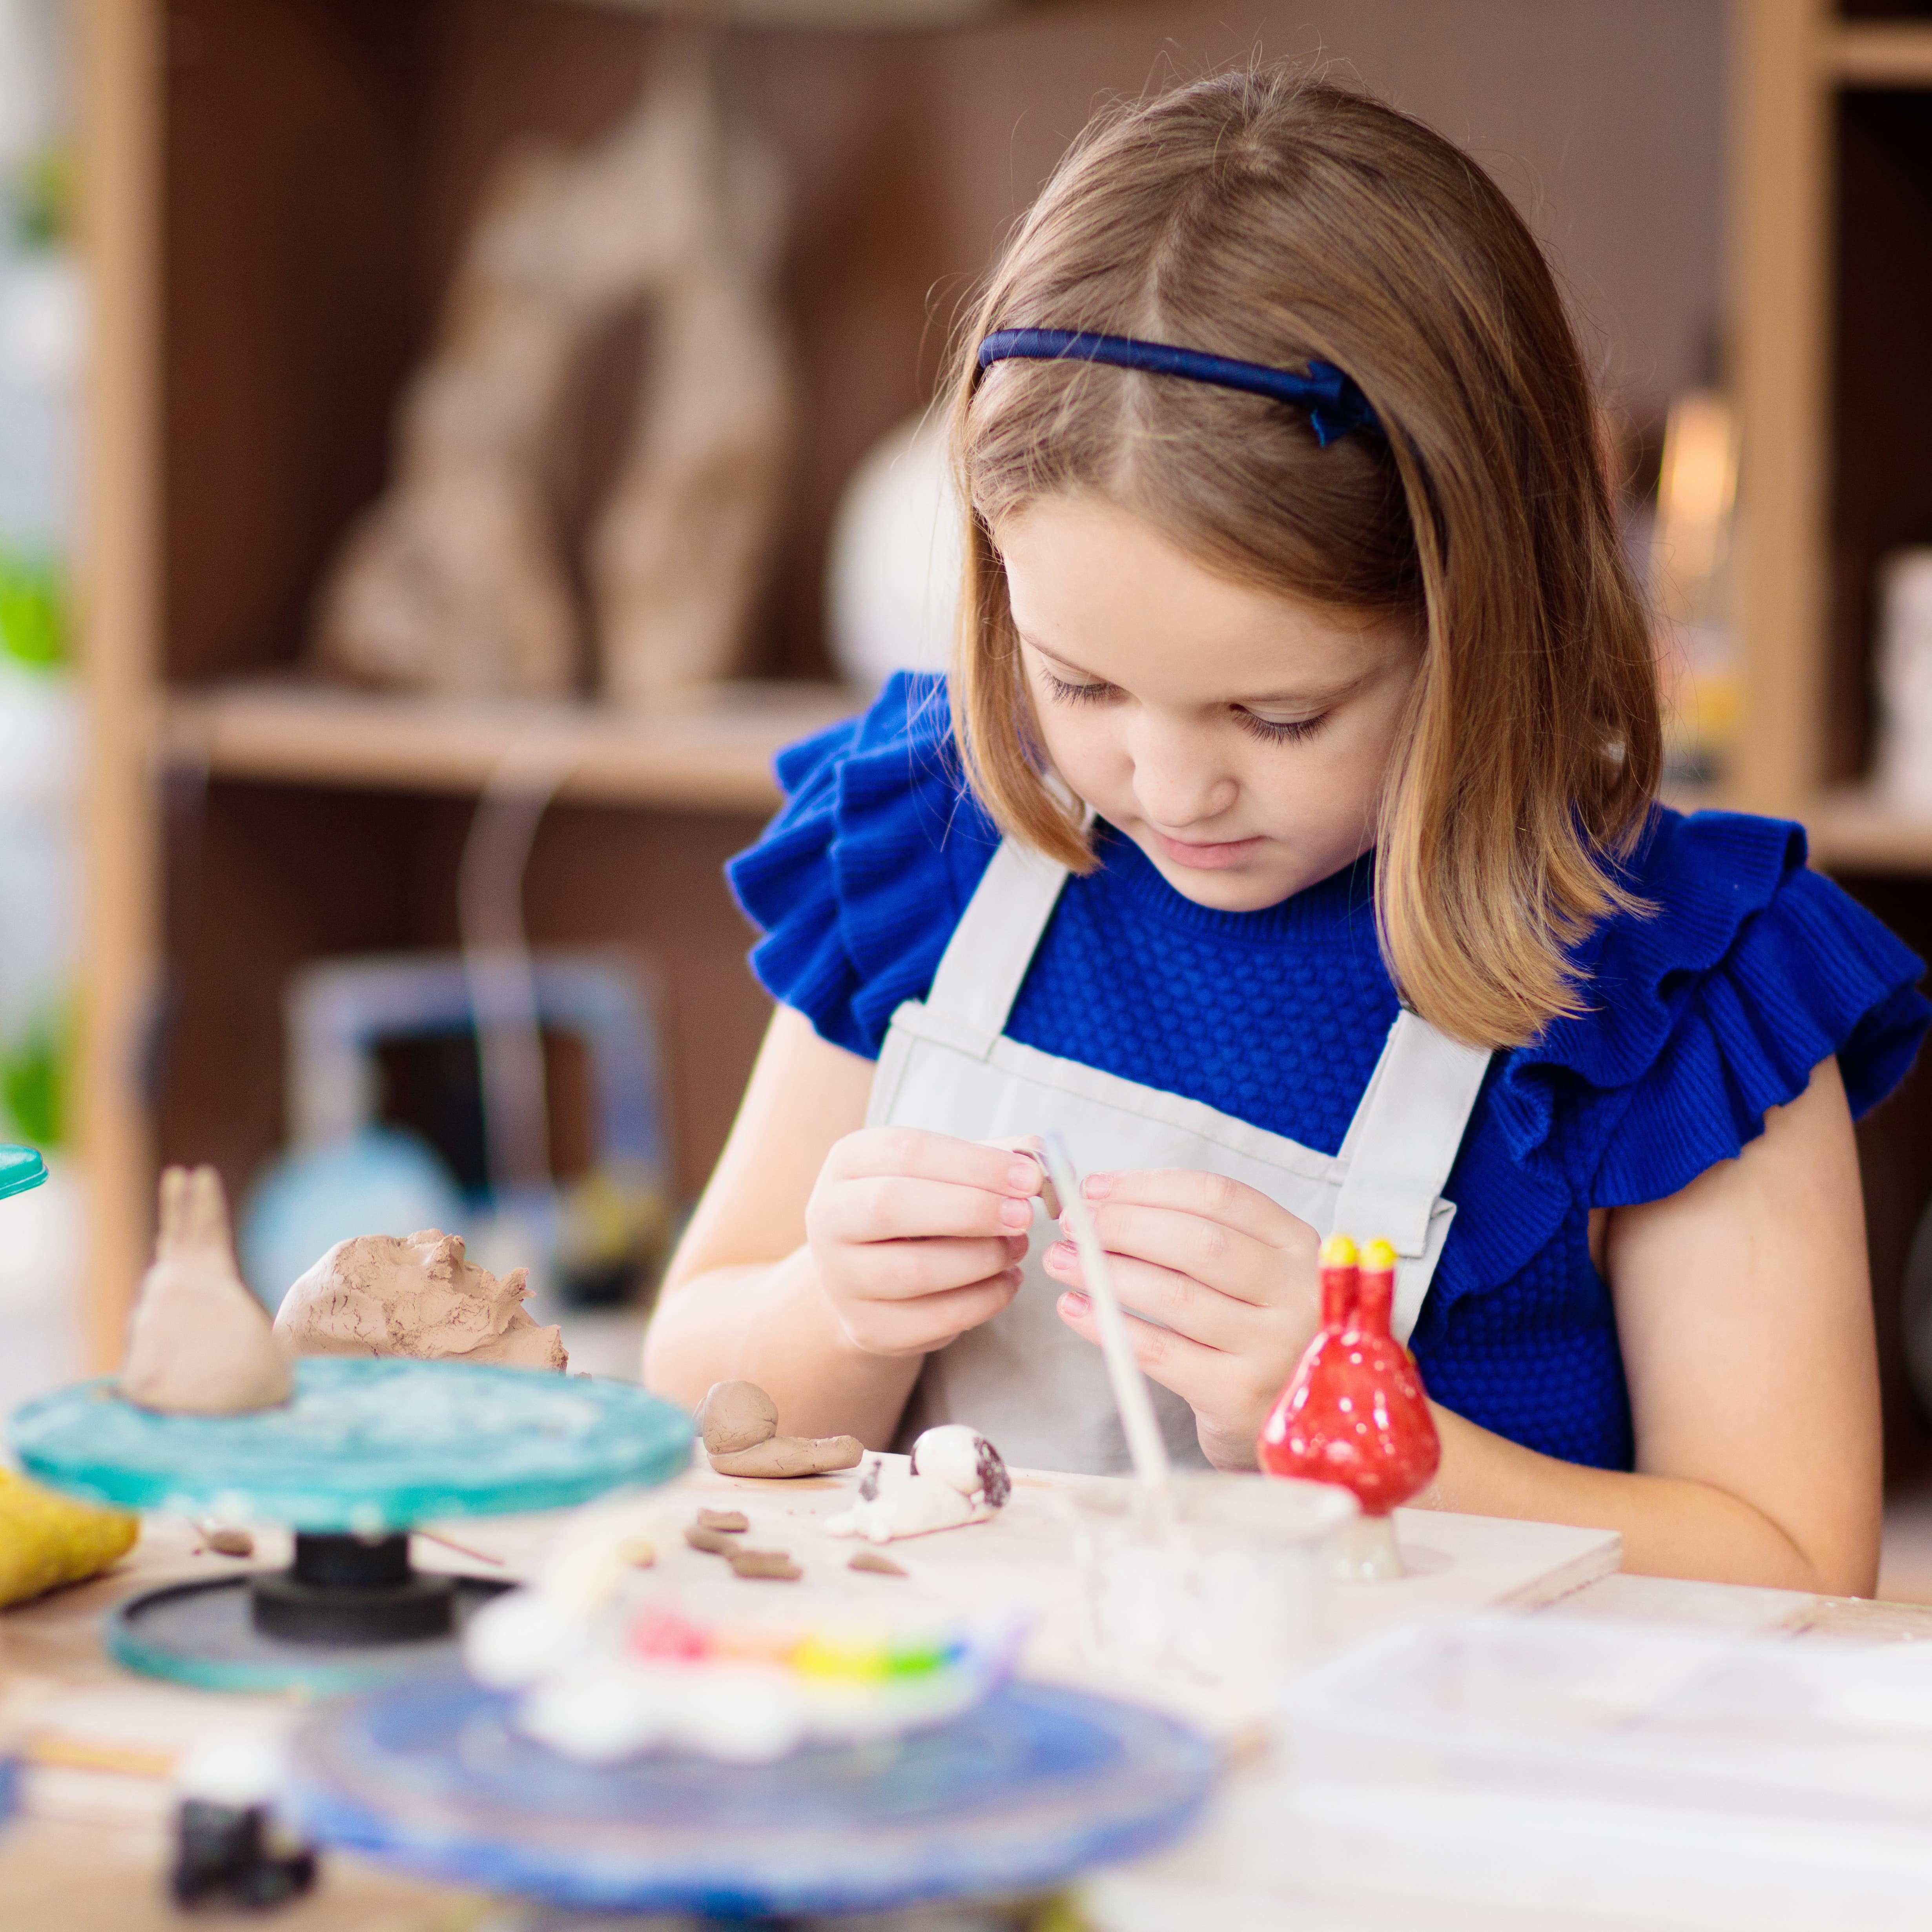 Ein Mädchen in blauem Kleid mit Schürze arbeitet konzentriert beim Töpfern.